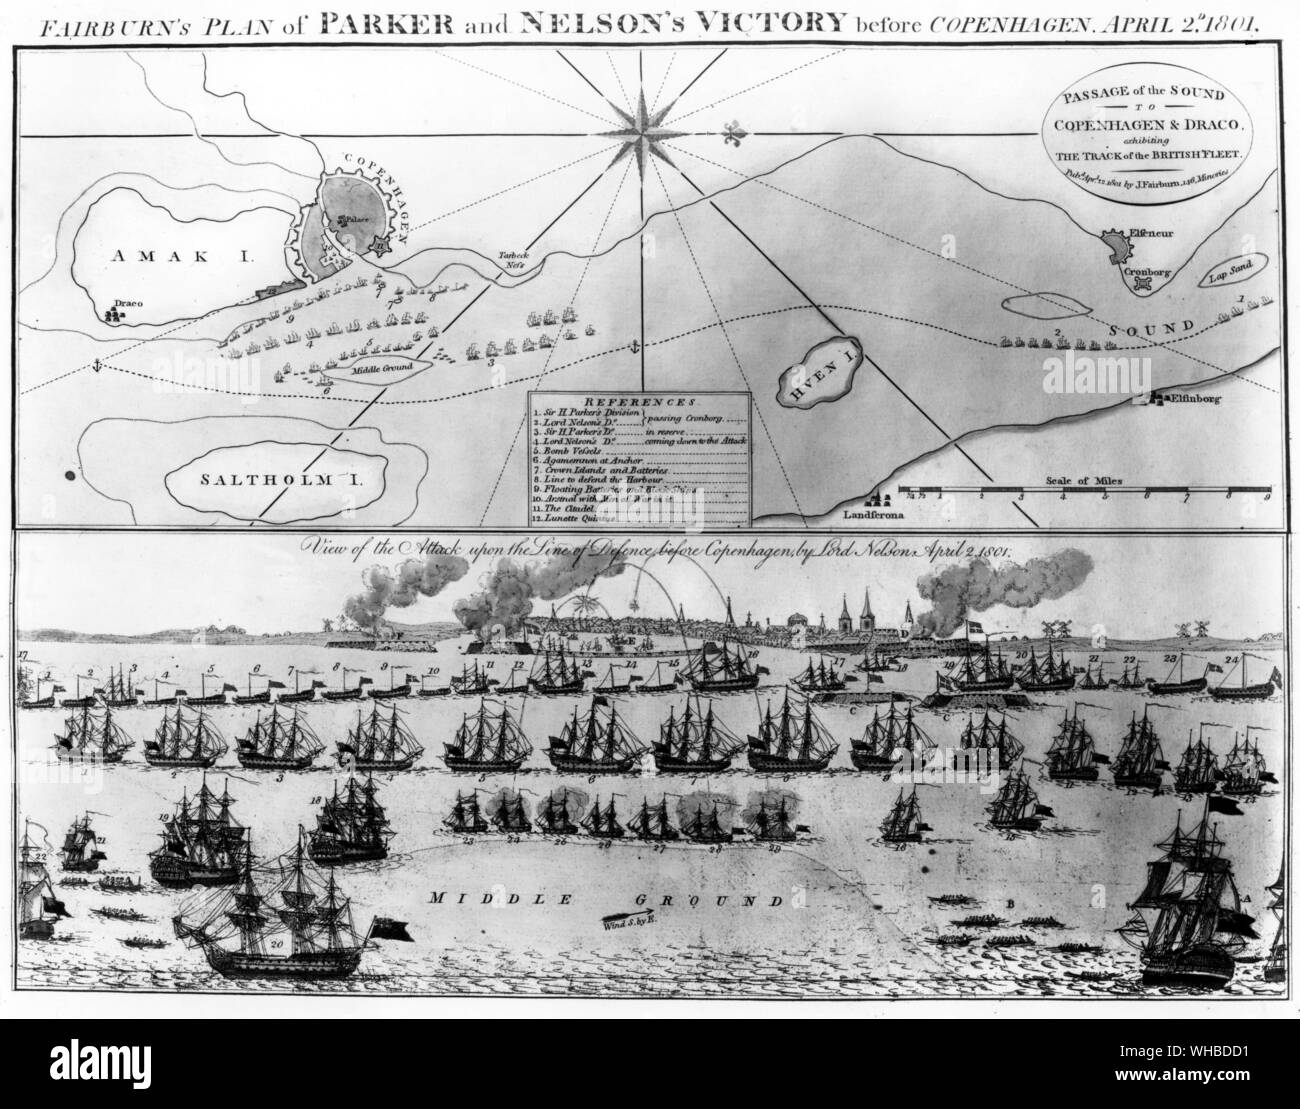 Fairburn's Plan von Parker und Nelsons Sieg vor Kopenhagen 2.April 1801. Blick auf den Angriff auf die Linie der Verteidigung vor Kopenhagen von Lord Nelson. Stockfoto